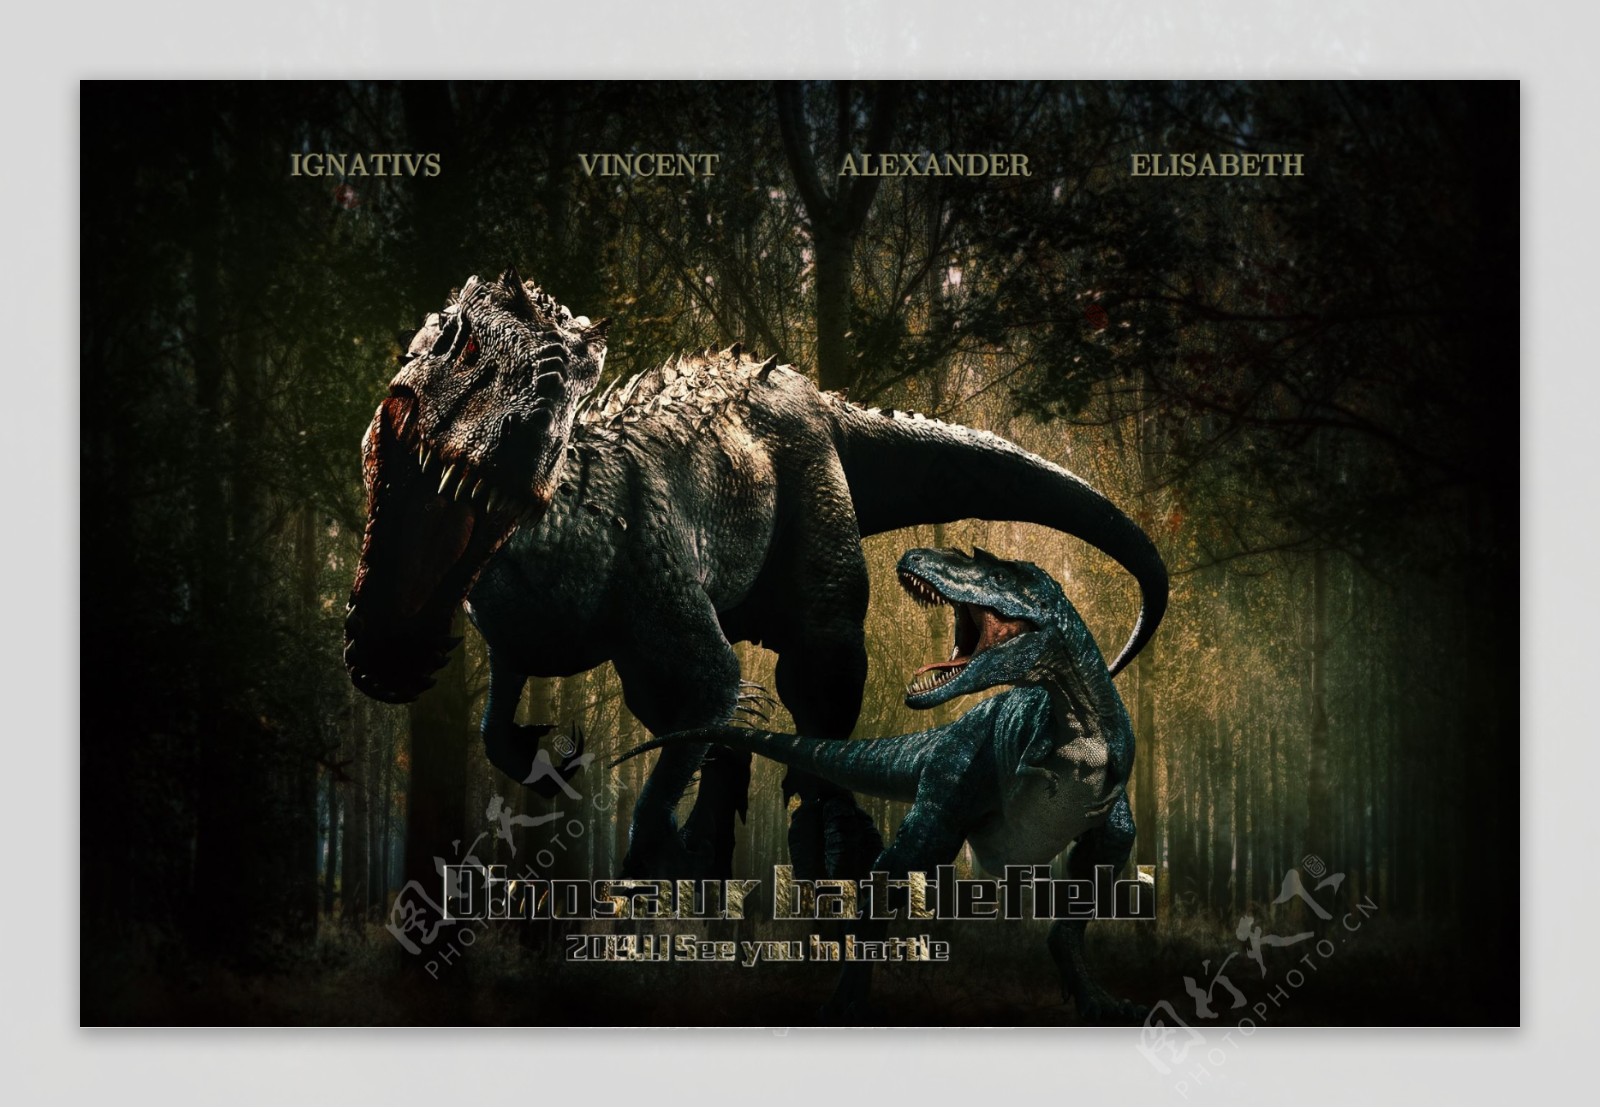 创意侏罗纪恐龙战场电影海报合成